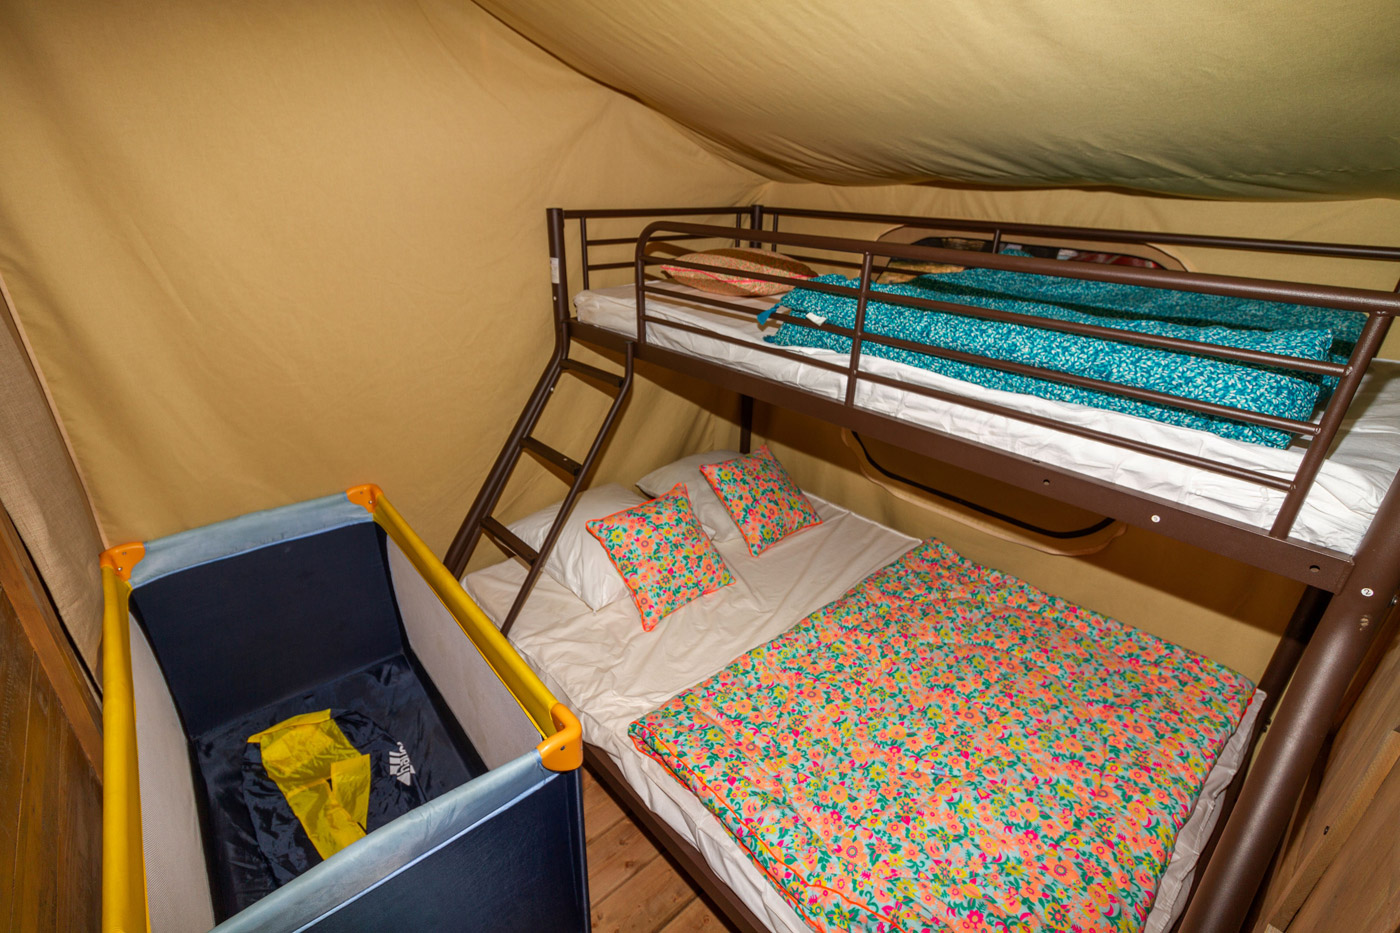 Lodge Kenya 34sq.m. - 2 bedrooms